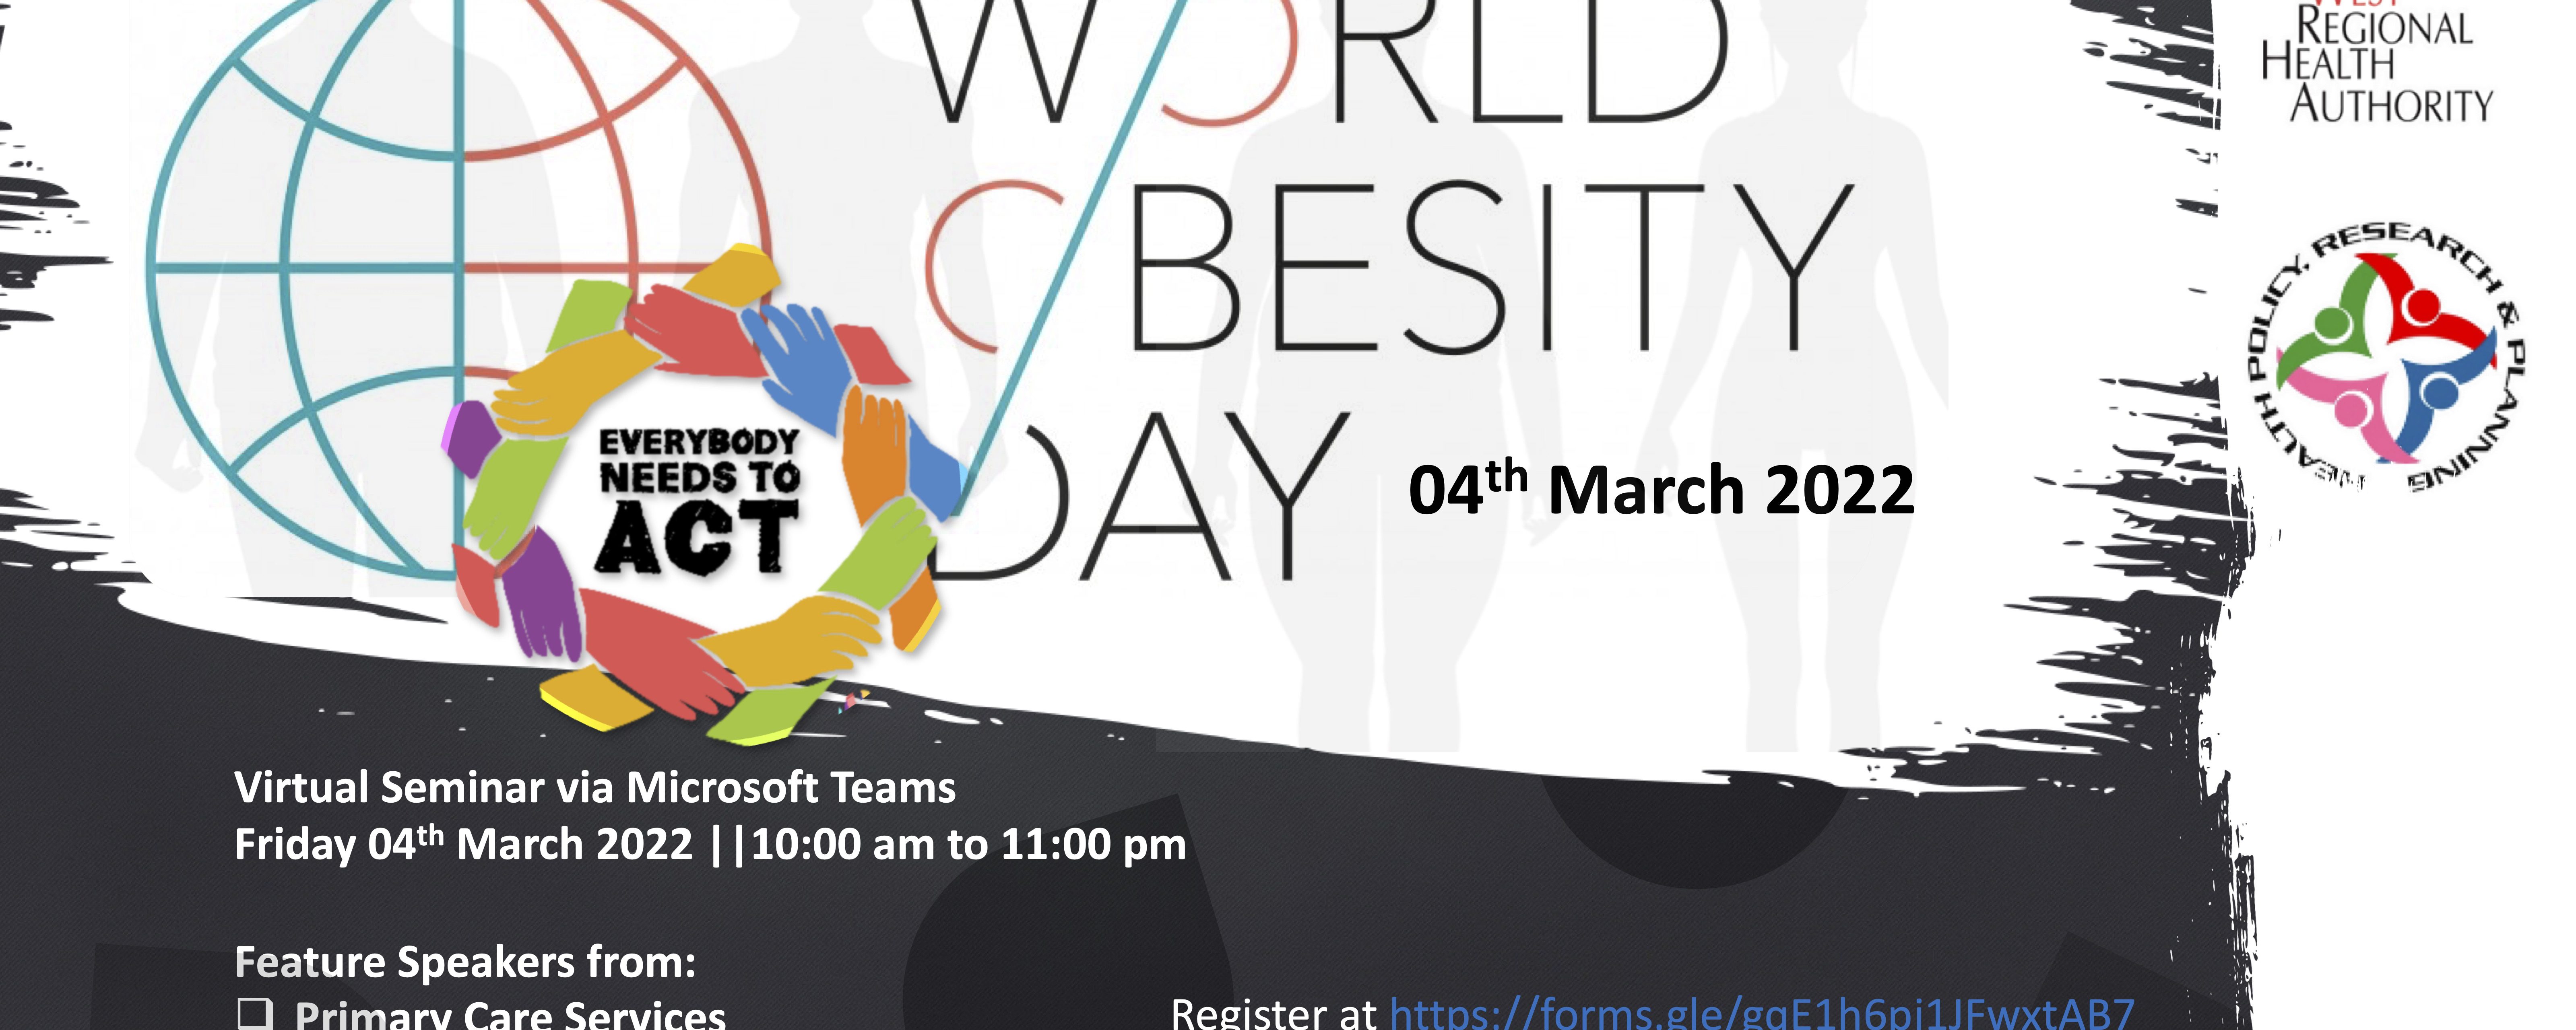 World Obesity Day 2022